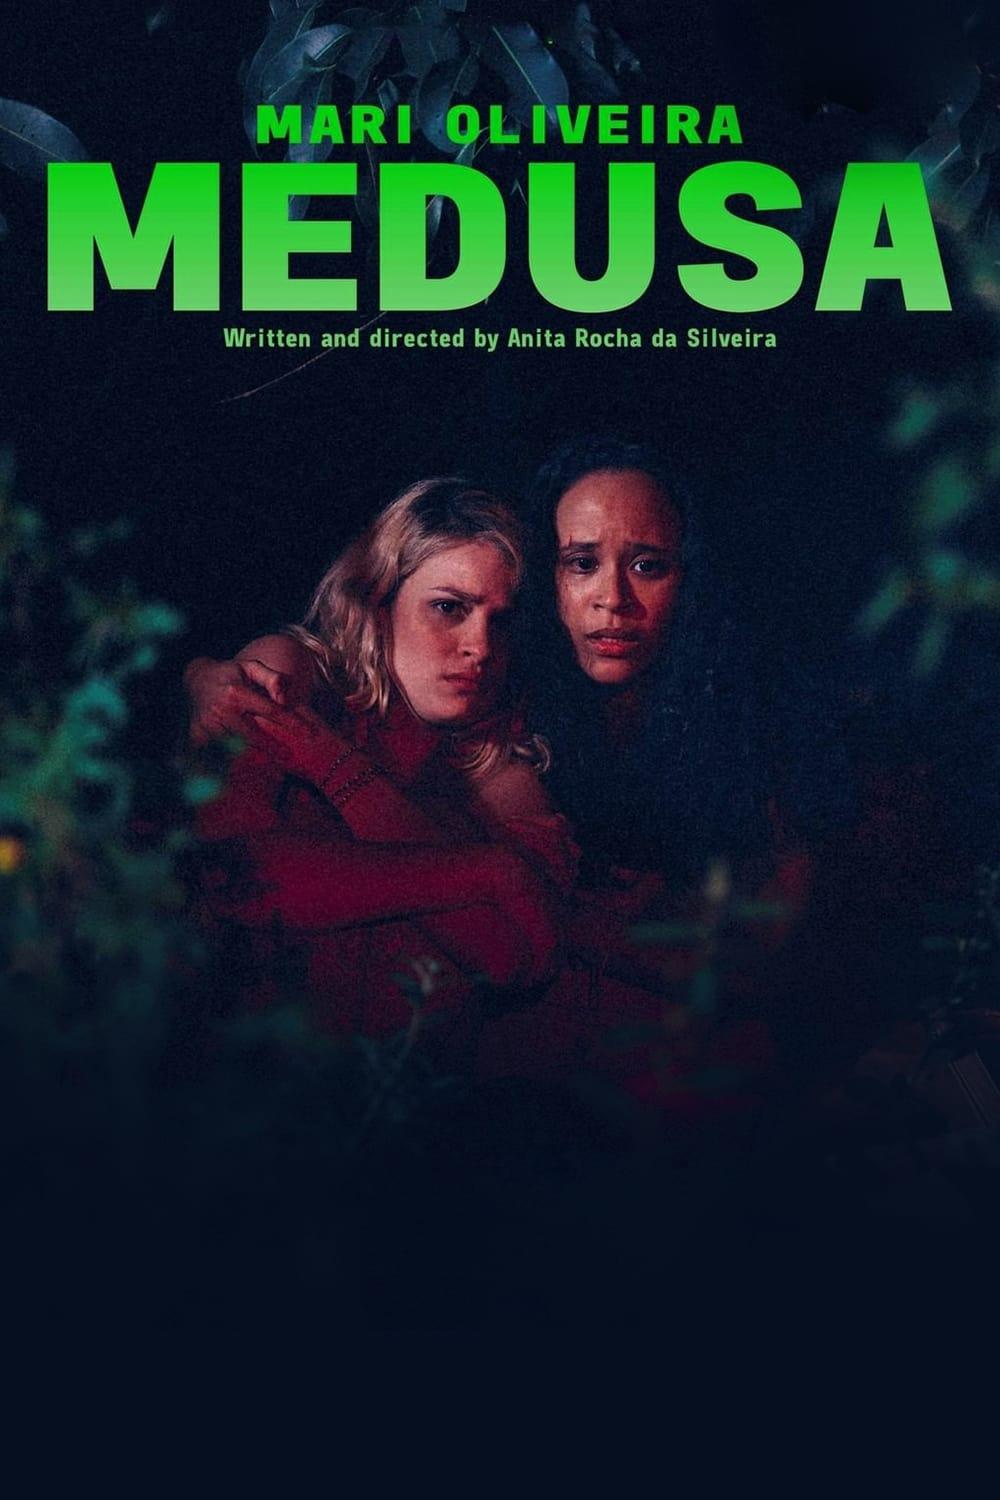 Medusa poster